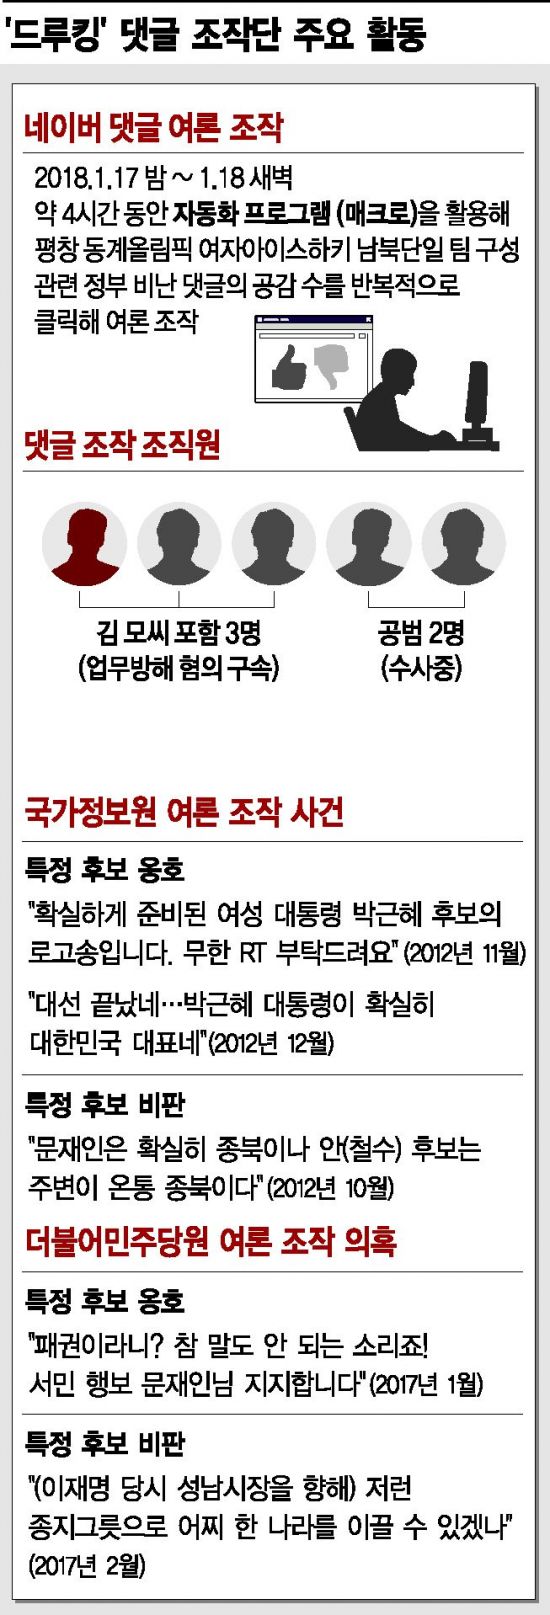 [단독]드루킹, 19대 대선때도 추천·댓글 활동…국정원 사건 수법 '판박이'